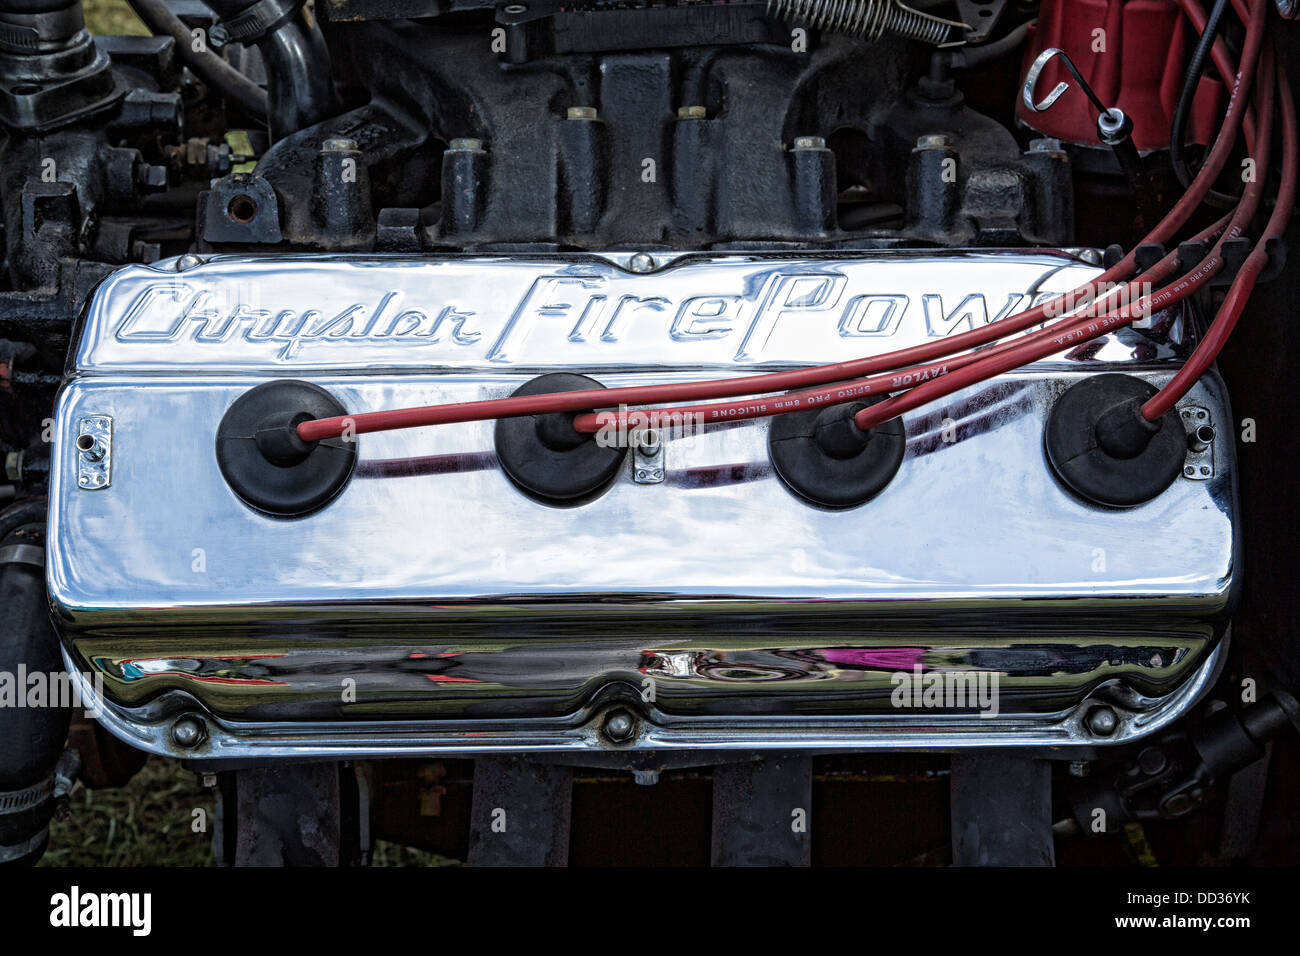 Chrysler engine chromium rocker cover detail. Stock Photo